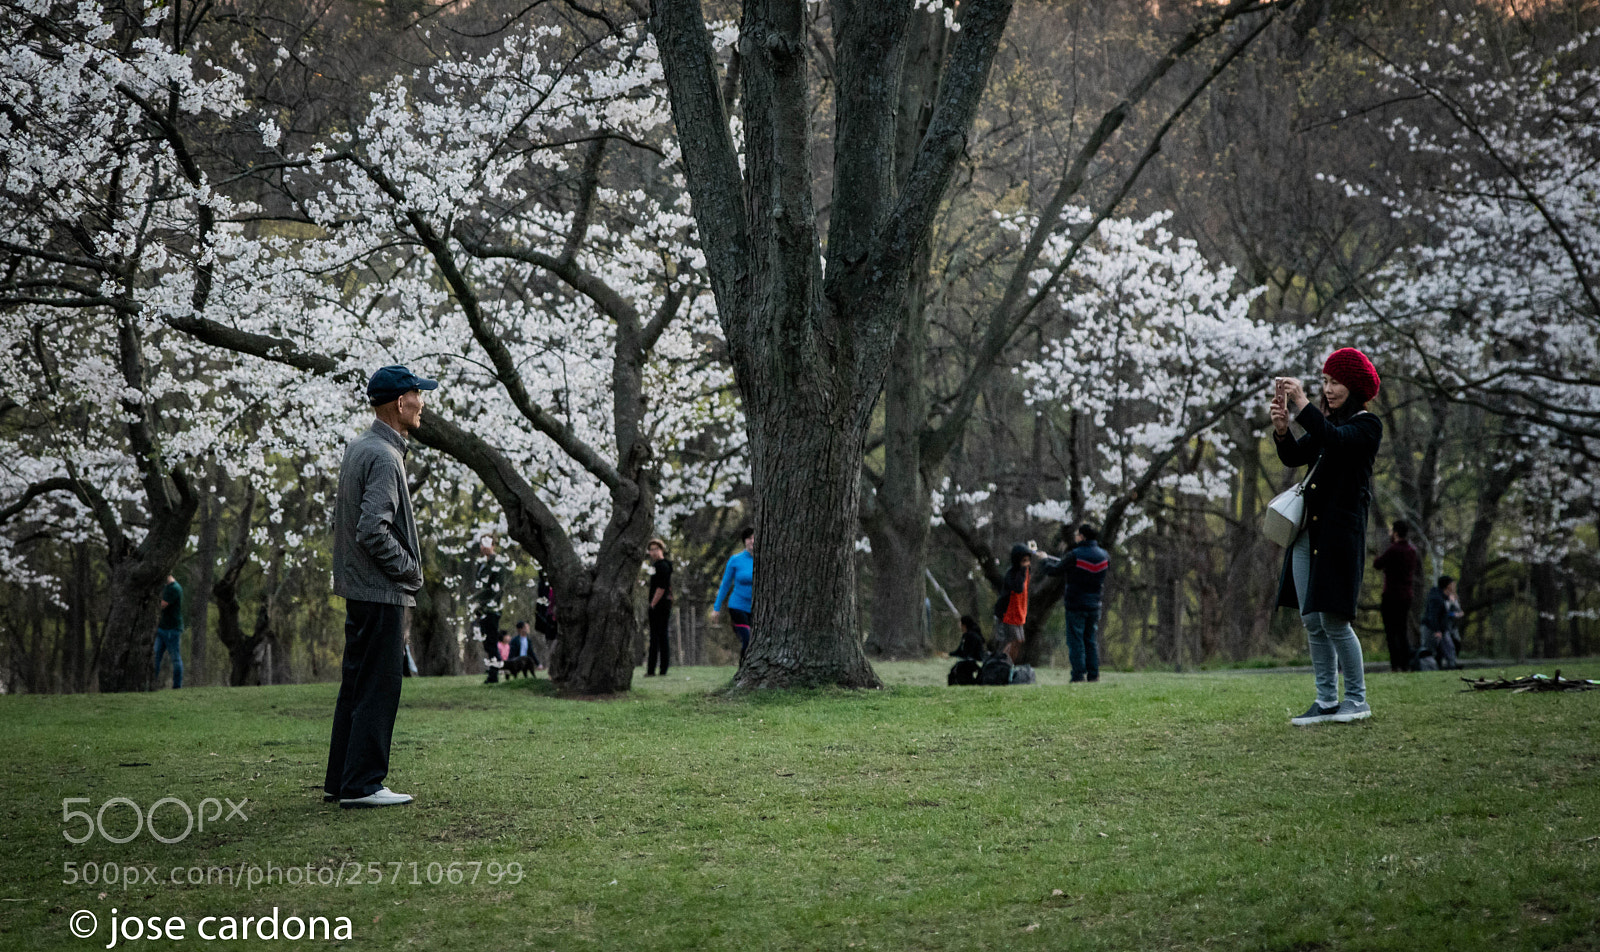 Nikon D850 sample photo. High park cherry blossom photography